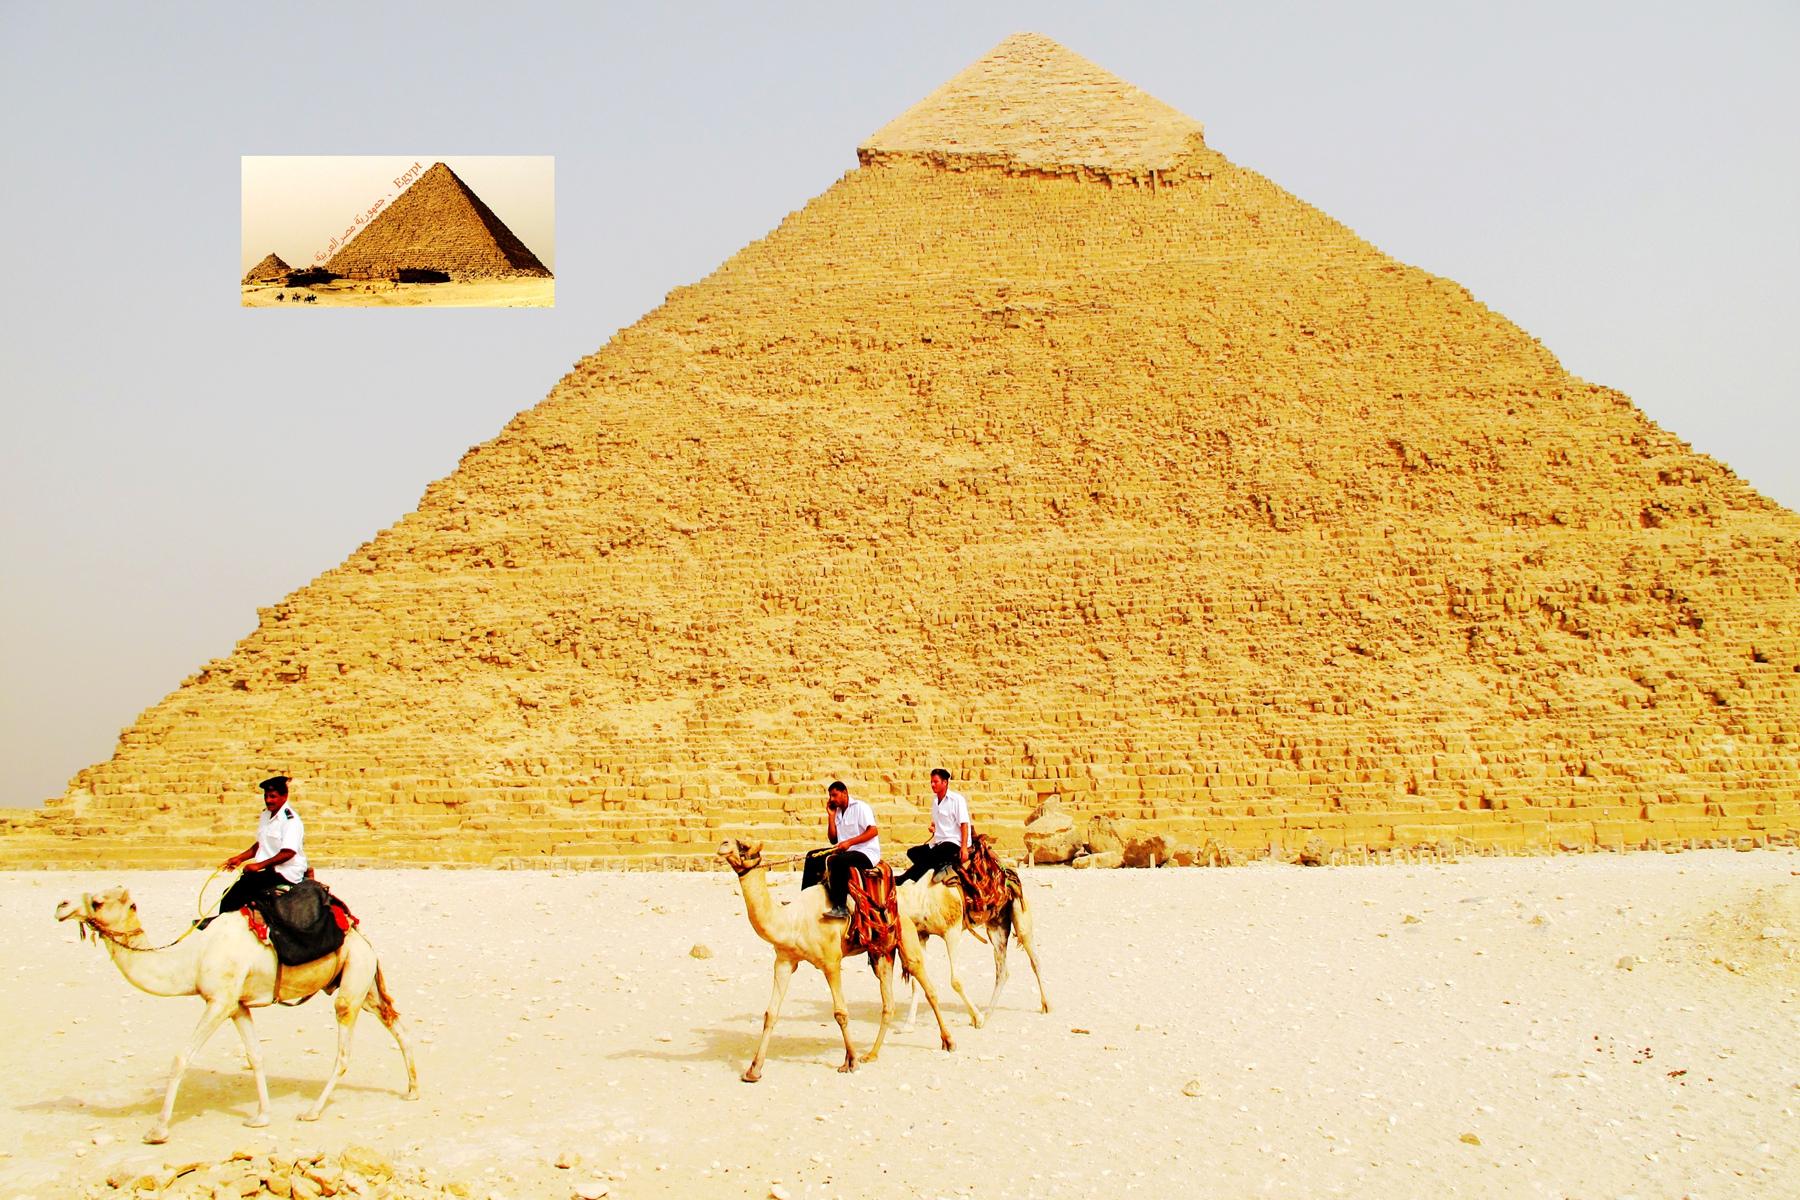 查询并比较深圳到埃及的机票价格 - KAYAK旅游比价